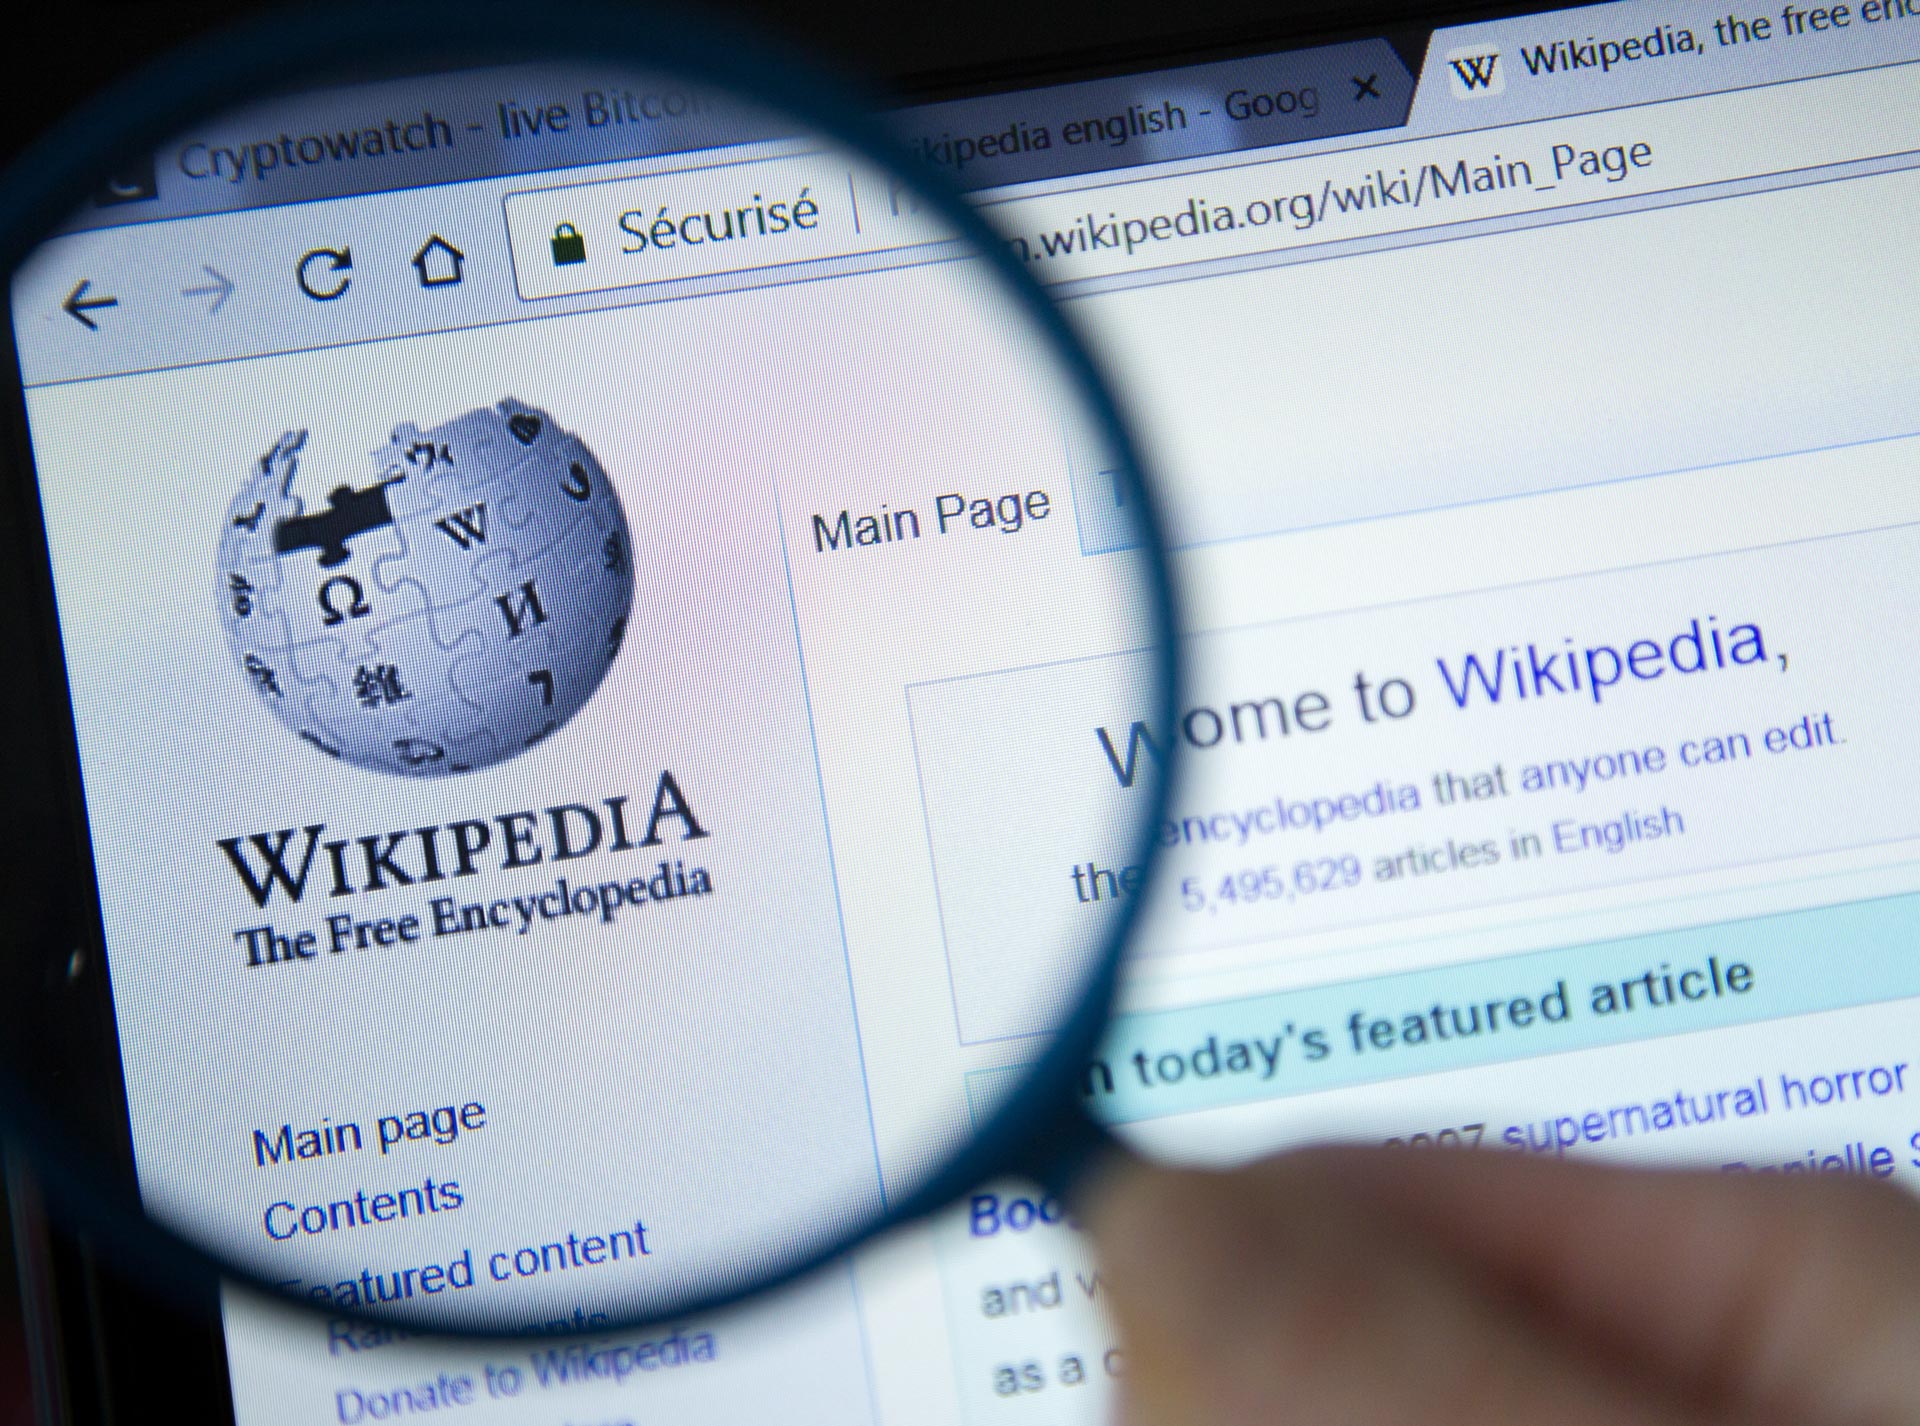 Denial-of-service attack - Wikipedia